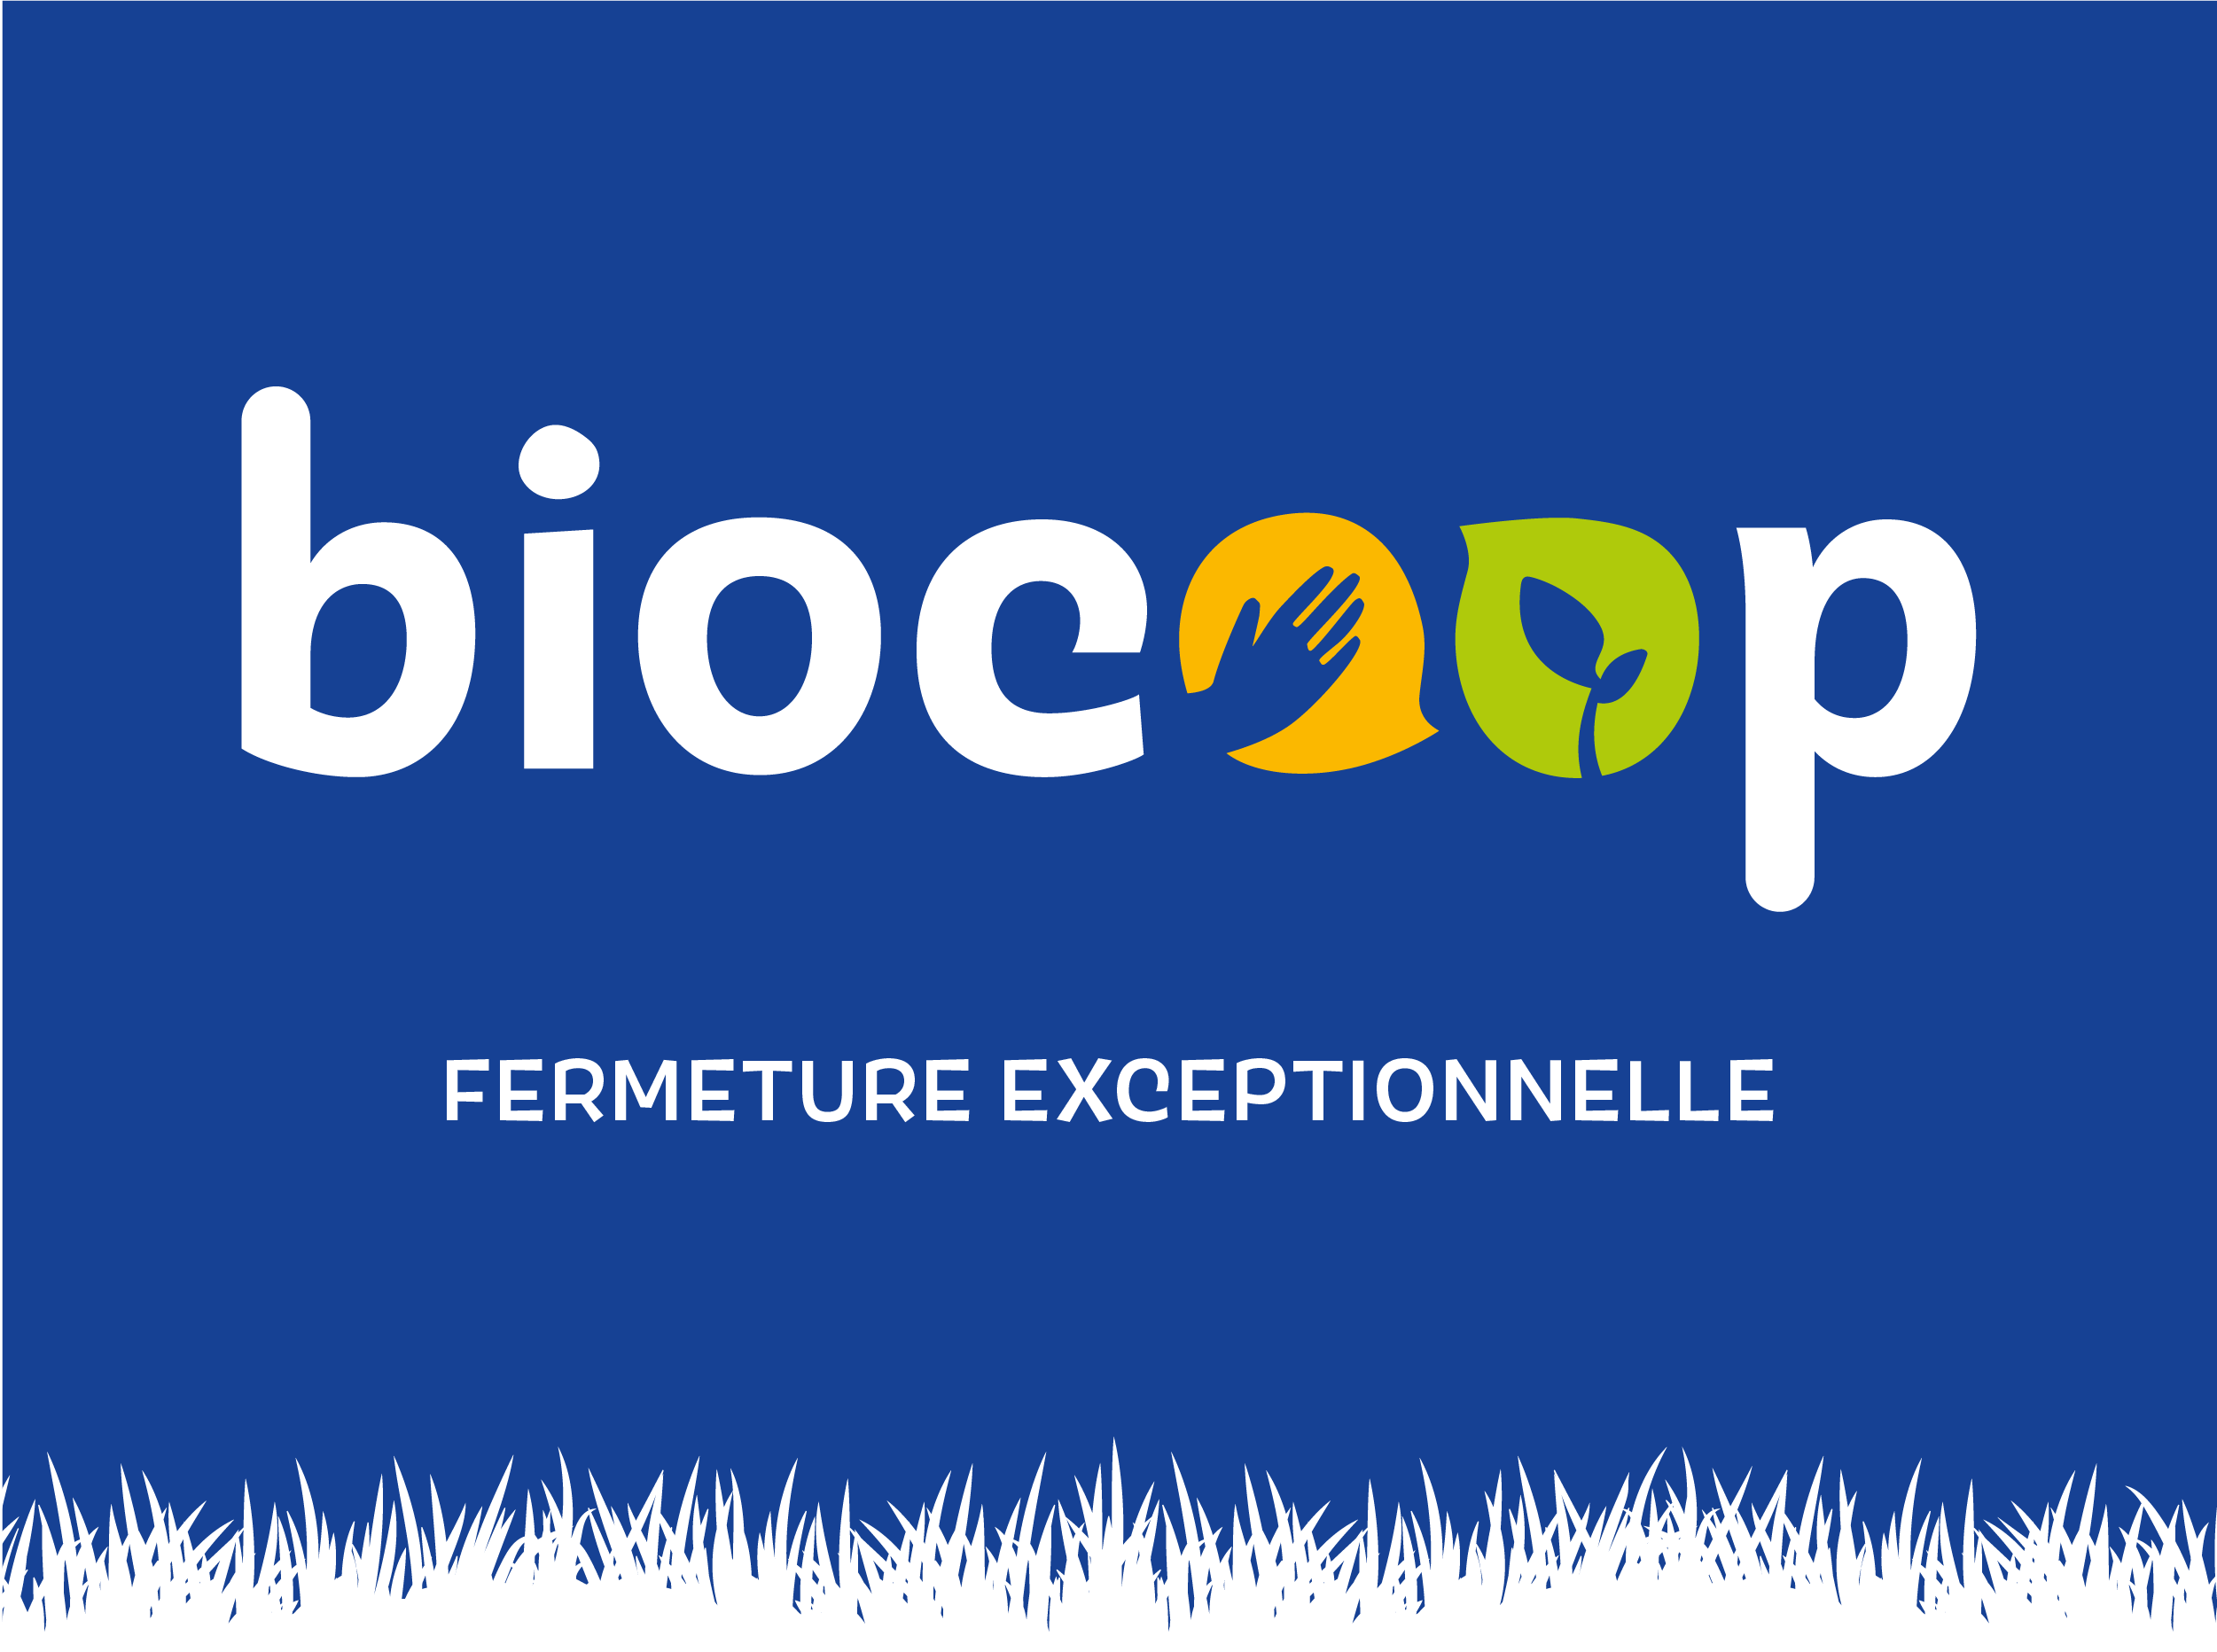 ➡️ Votre magasin Biocoop Fréquence Bio sera exceptionnellement fermé le 1er Juillet (inventaire) ⬅️